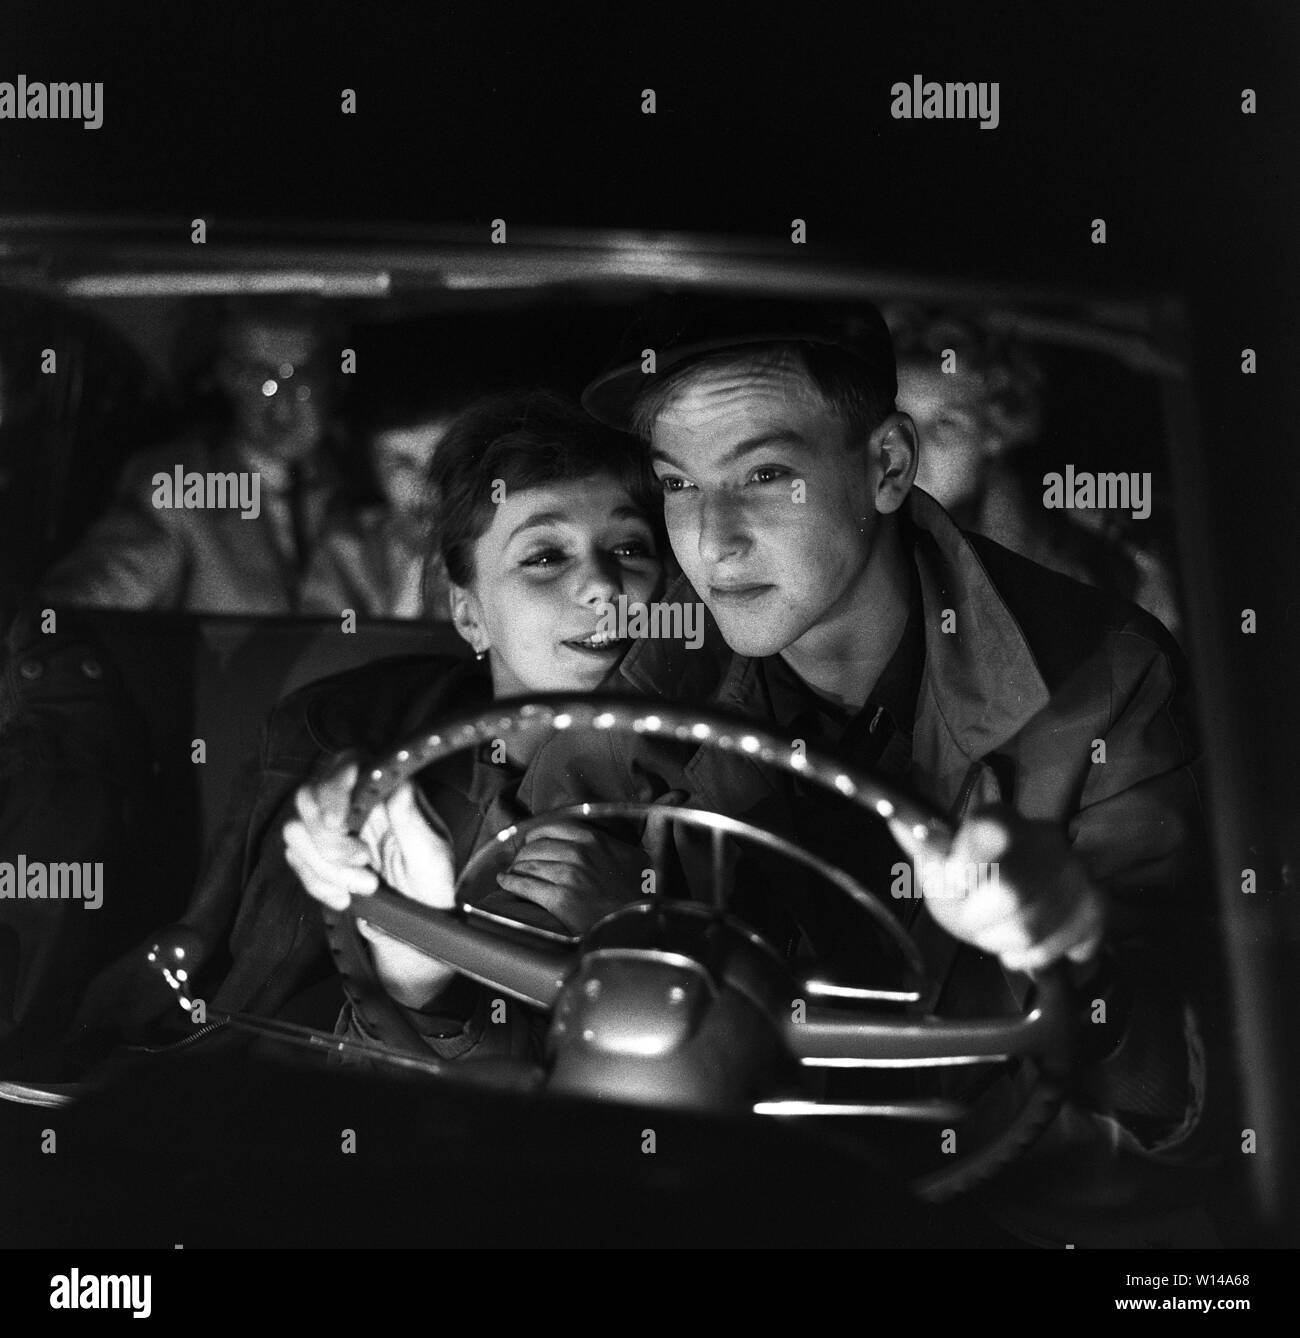 Das Fahren in den 1950er Jahren. Ein junges Paar im Fahrersitz. Er ist auf der Fahrt in die dunkle Nacht und seine Augen sind auf den Verkehr konzentrieren. Sie ist mehr an ihm interessiert und sitzt so nahe zu ihm, als Sie kann. Schweden 1959. ref BV 105-5 Stockfoto